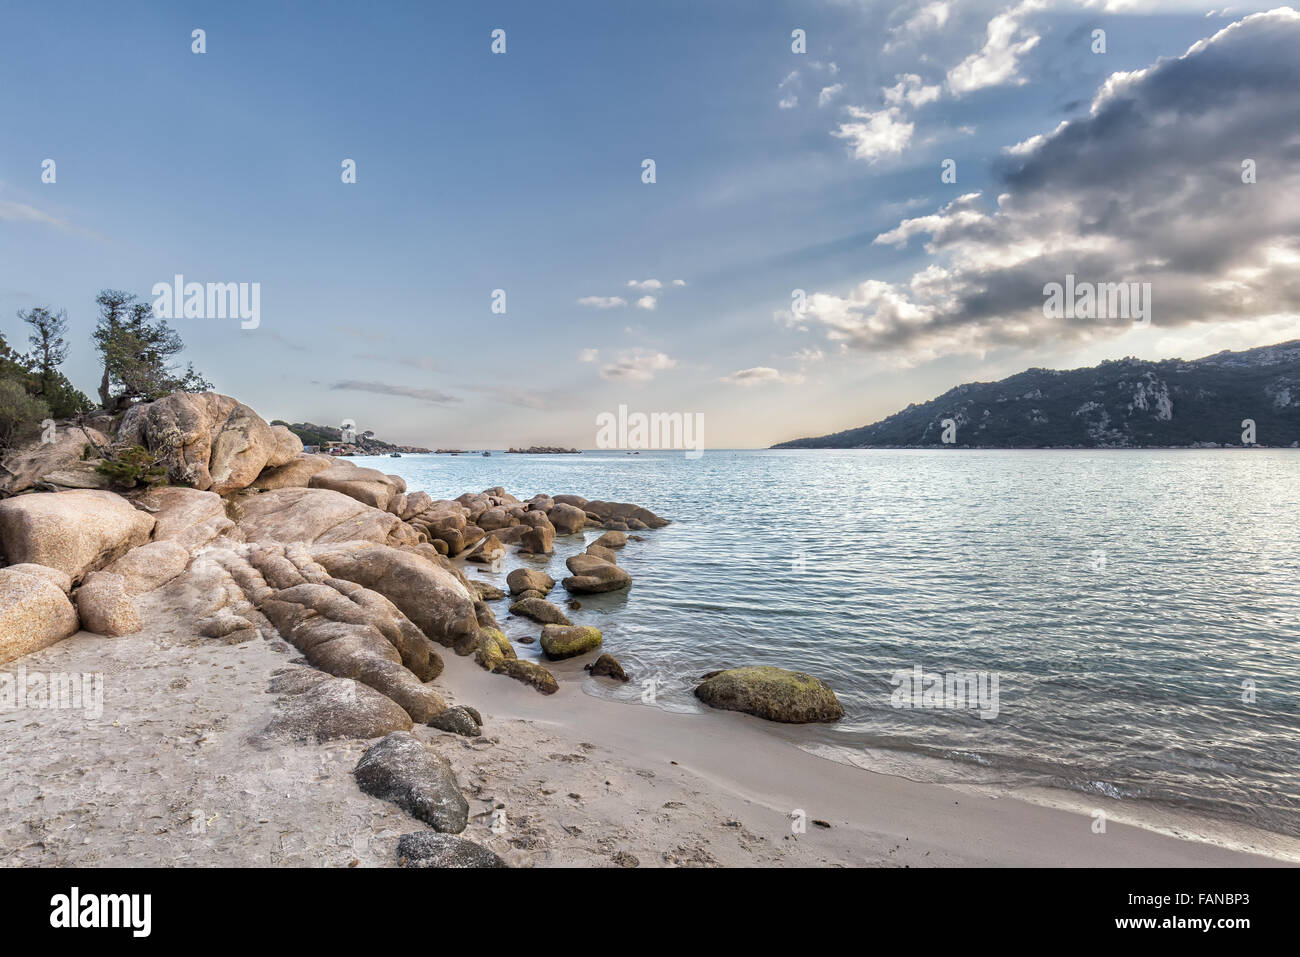 Les Roches et rochers dans une mer turquoise translucide et bleu ciel à la plage de Santa Giulia en Corse Banque D'Images